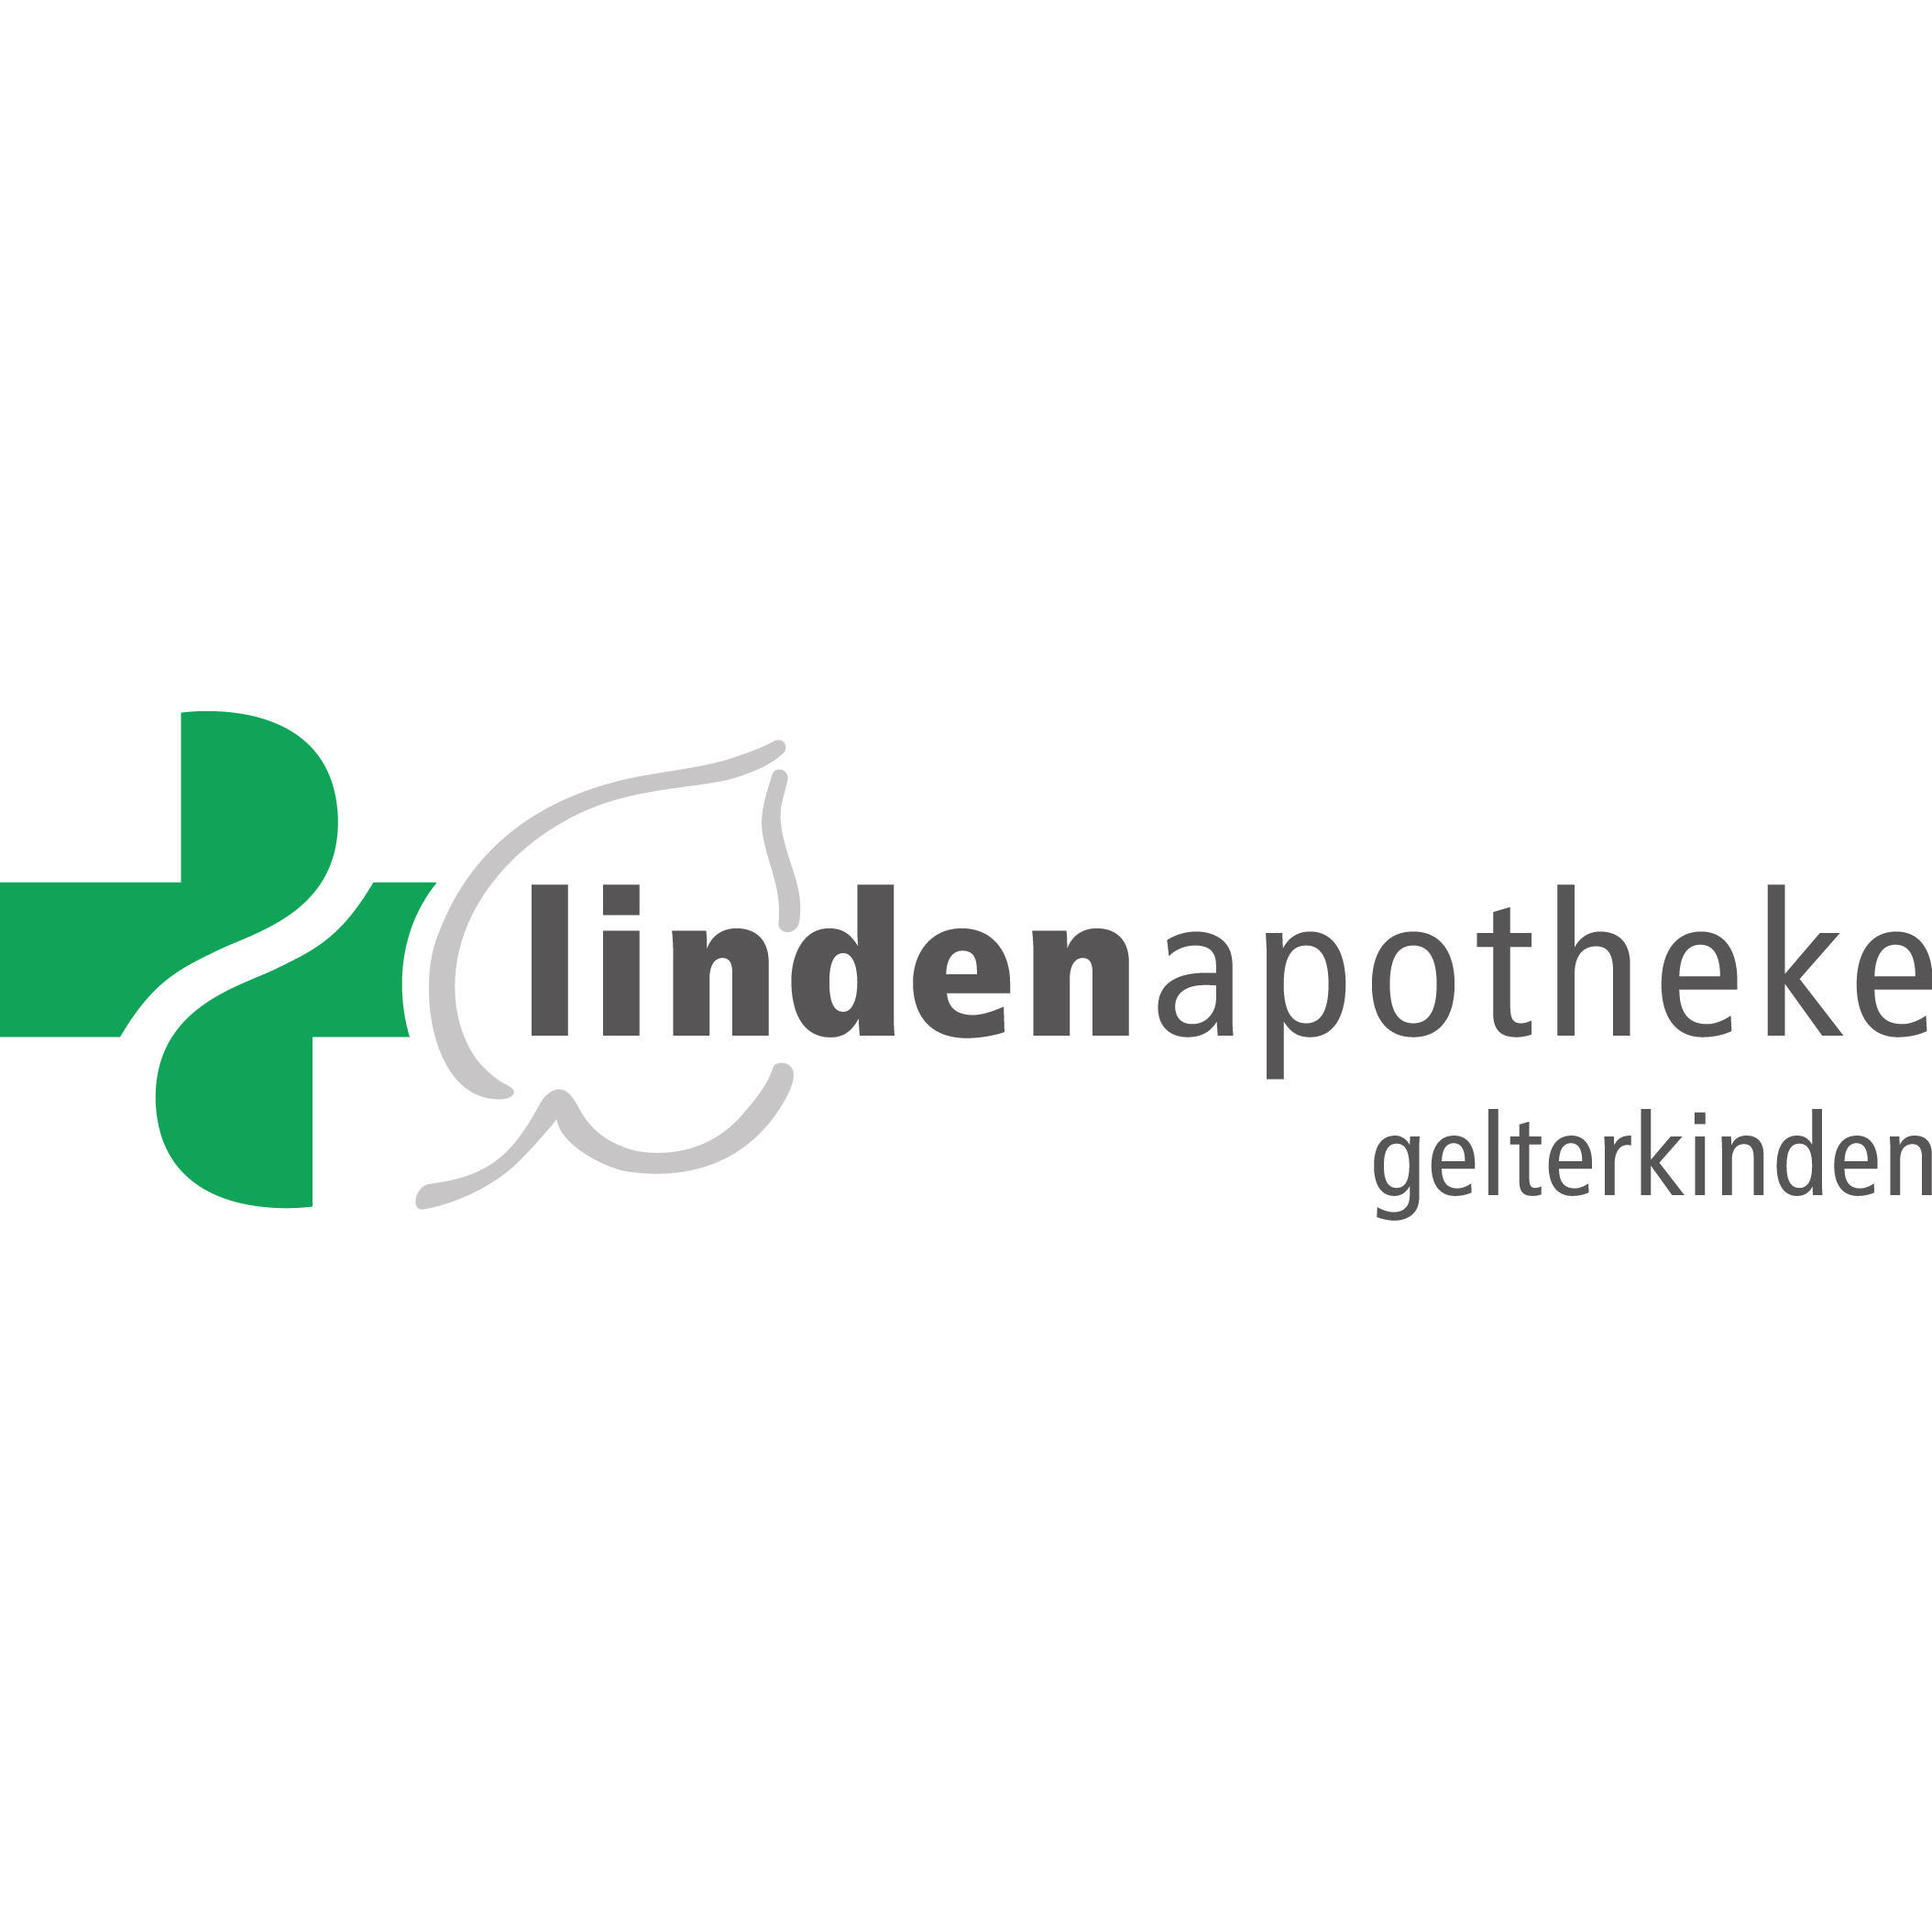 Lindenapotheke Gelterkinden Logo